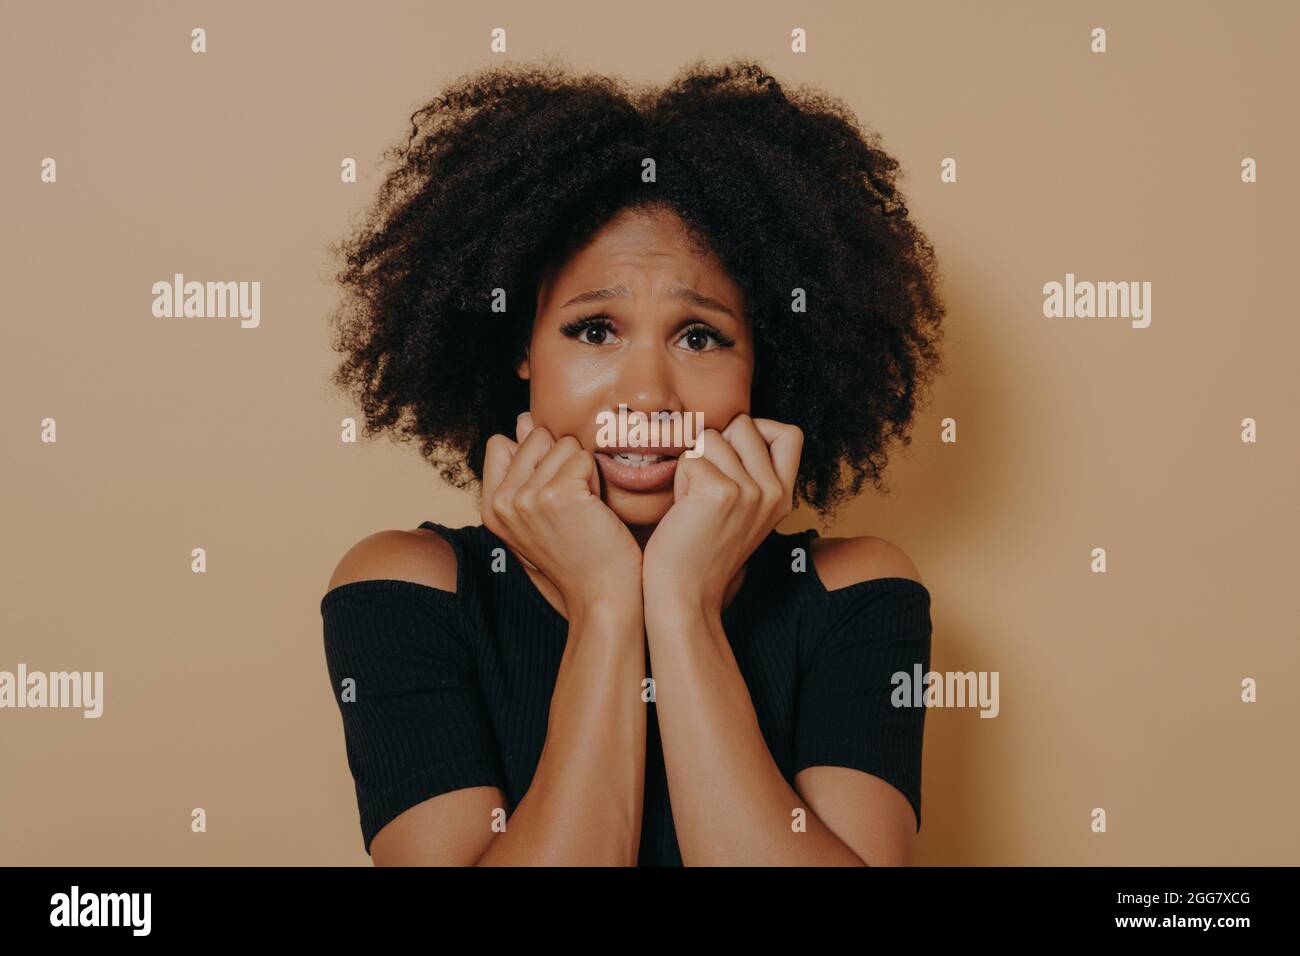 Spaventato razza femminile mista aspetto nervoso e sensazione di stress mentre si posa su sfondo beige Foto Stock